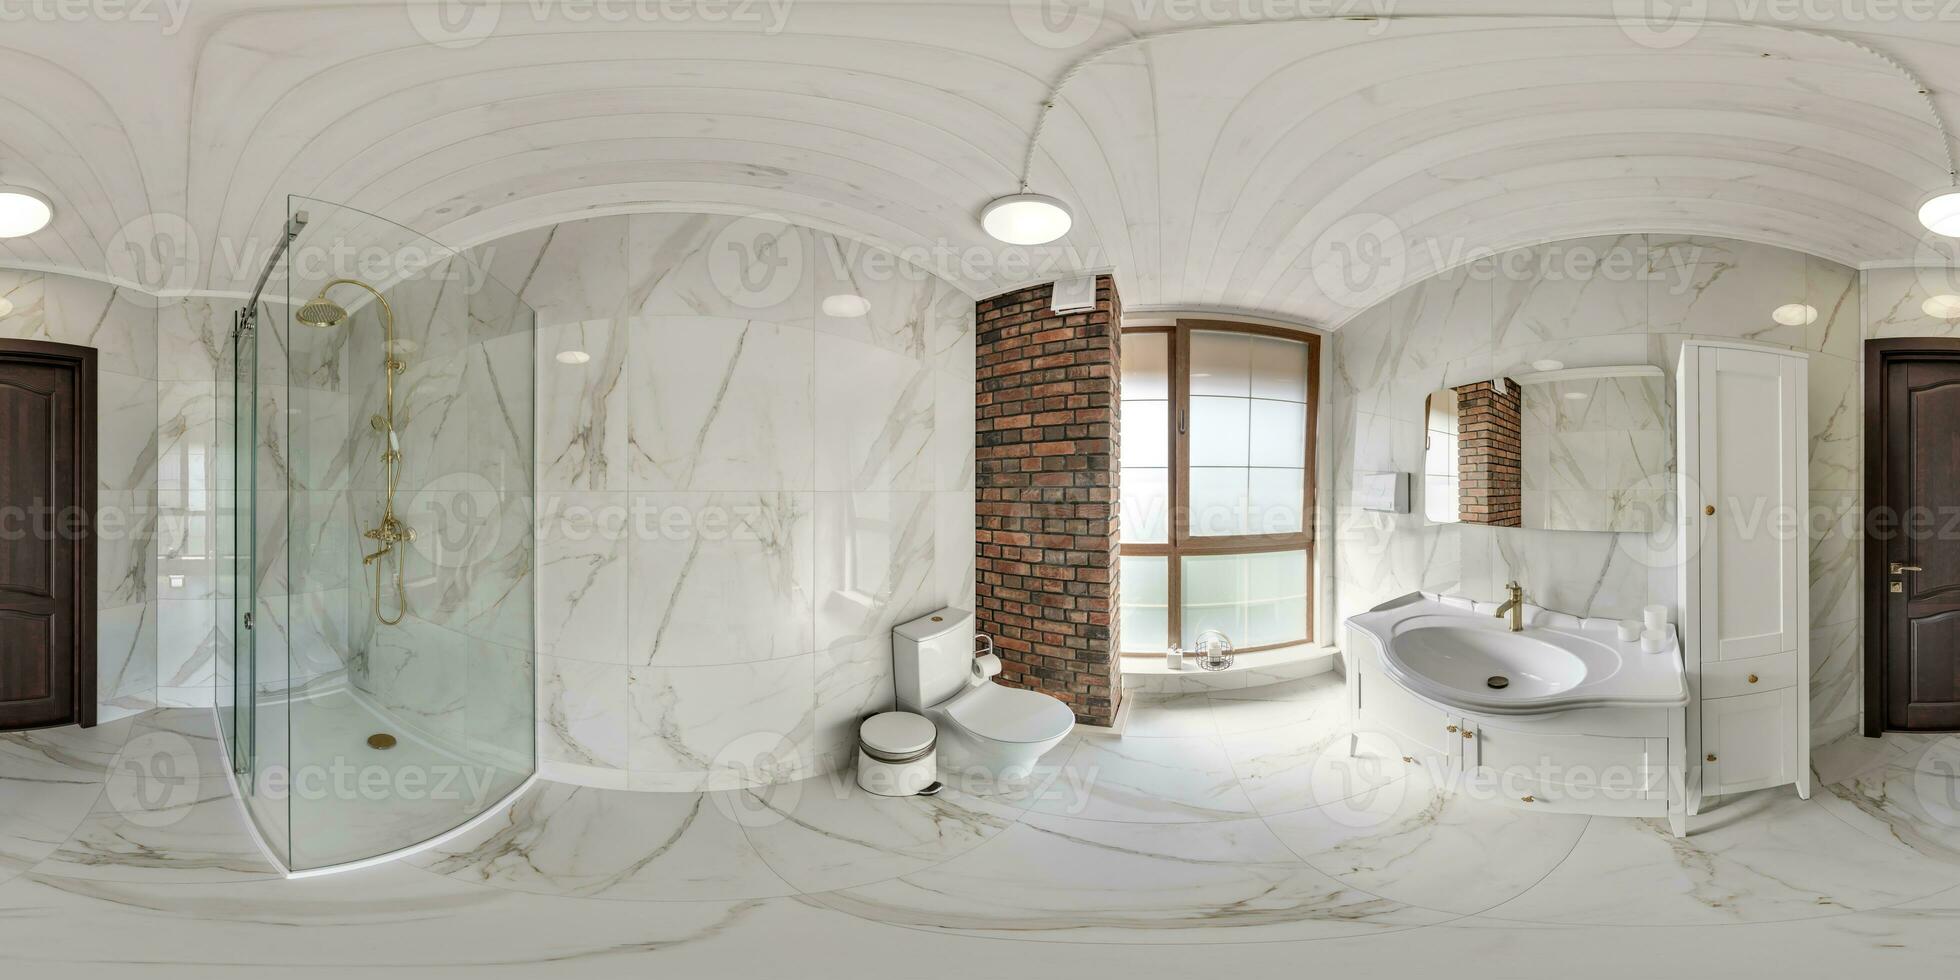 wit naadloos 360 hdr panorama in interieur van duur badkamer in zolder stijl in modern vlak appartementen met wastafel in equirectangular projectie met zenit en nadir. vr ar inhoud foto